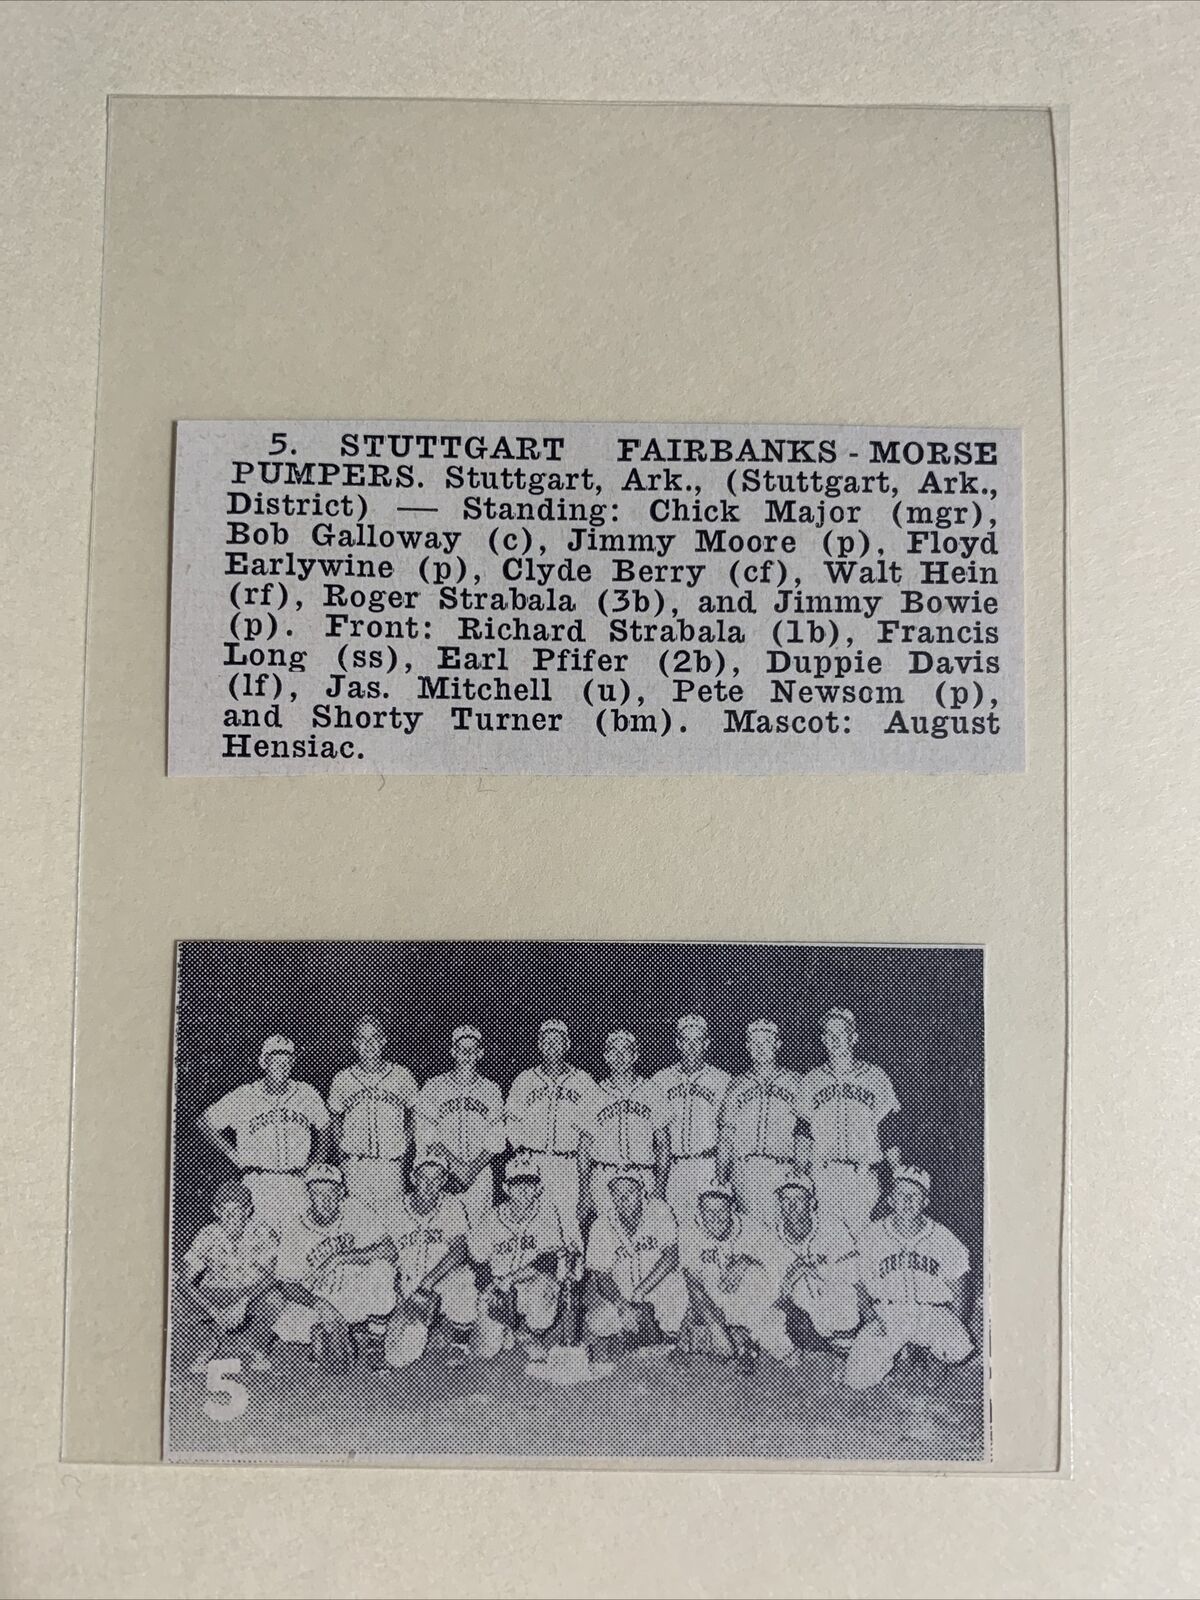 Stuttgart Fairbanks Morse Pumpers Arkansas 1952 Baseball Team Picture